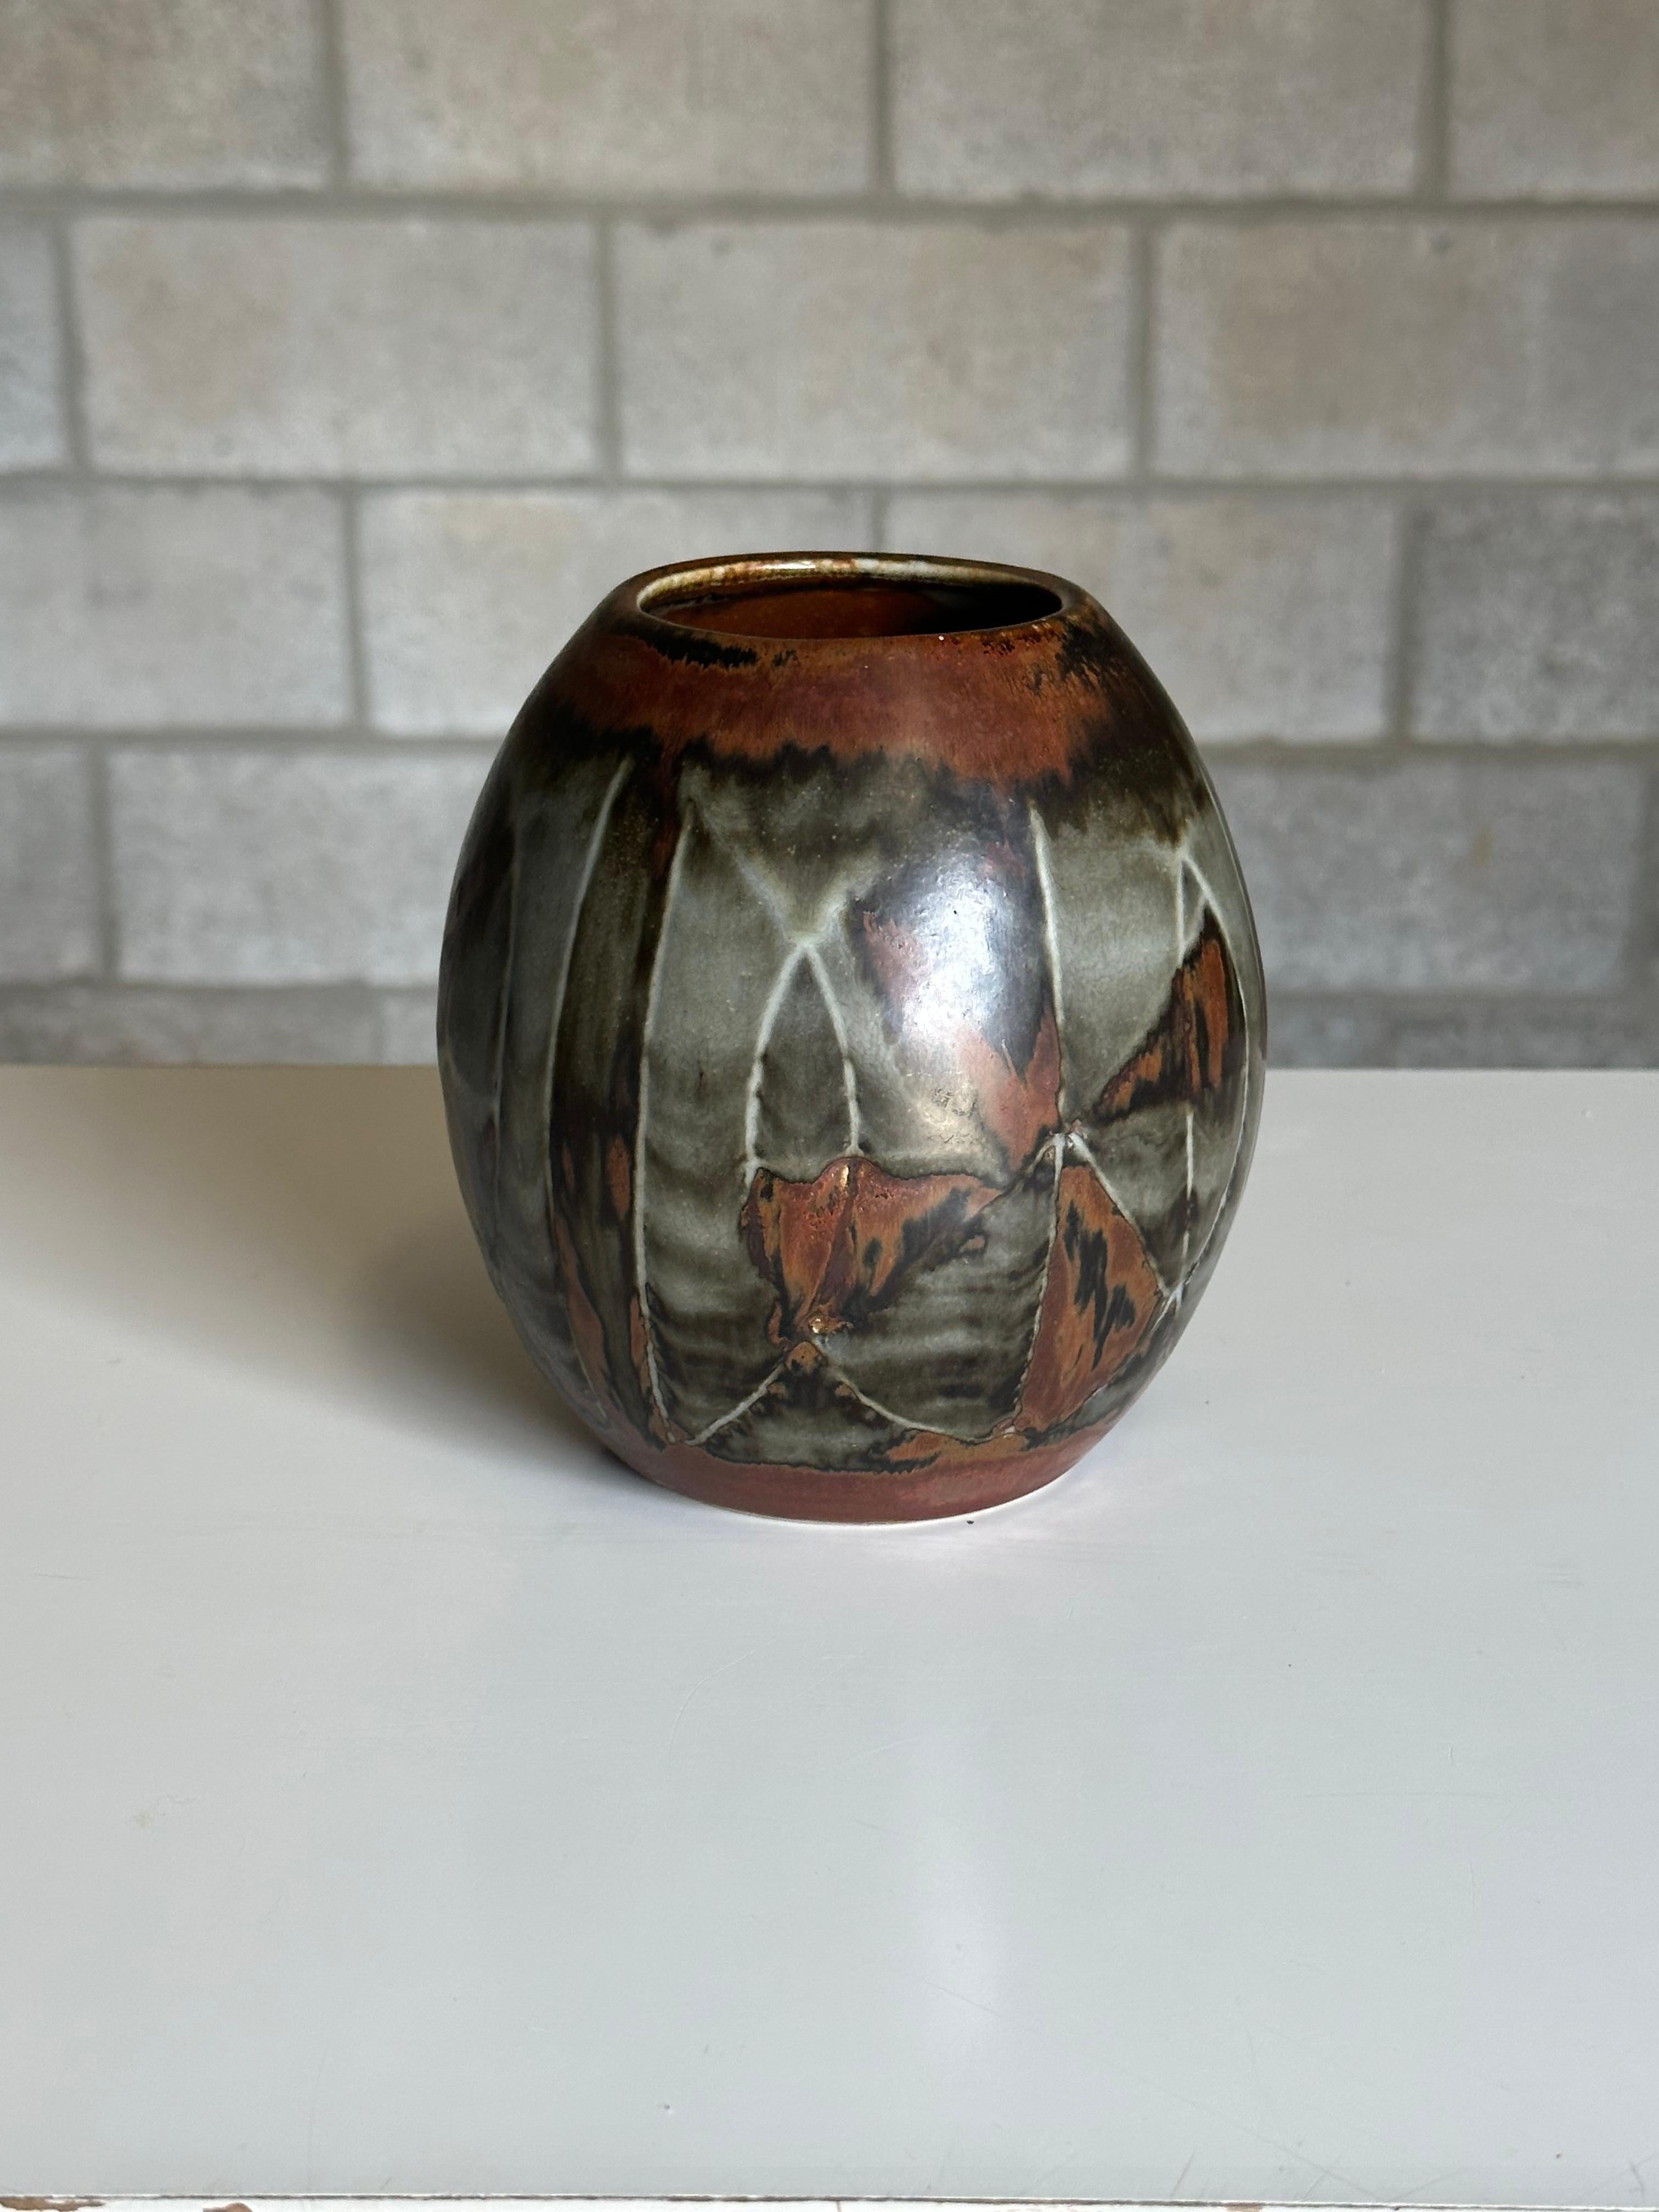 Grand vase en grès de Carl-Harry Stålhane pour Rörstrand. Une décoration intéressante ajoute à cette pièce. Merveilleuse profondeur des couleurs dans la glaçure.